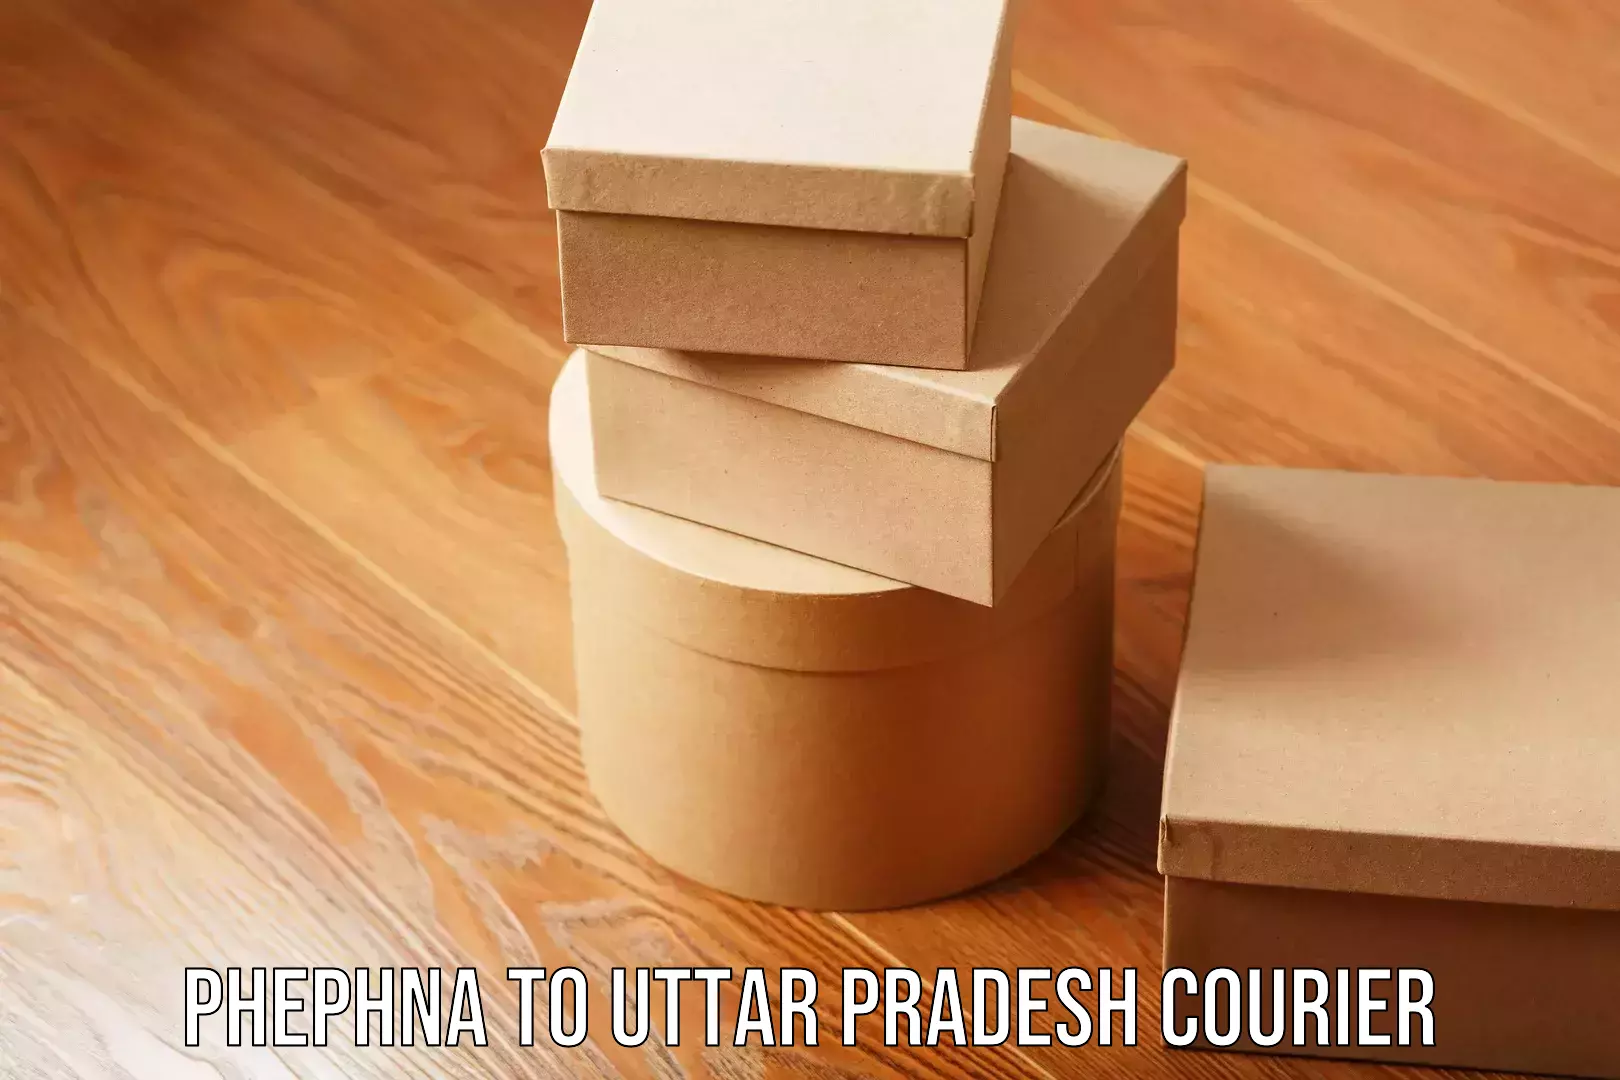 Skilled household transport Phephna to Uttar Pradesh